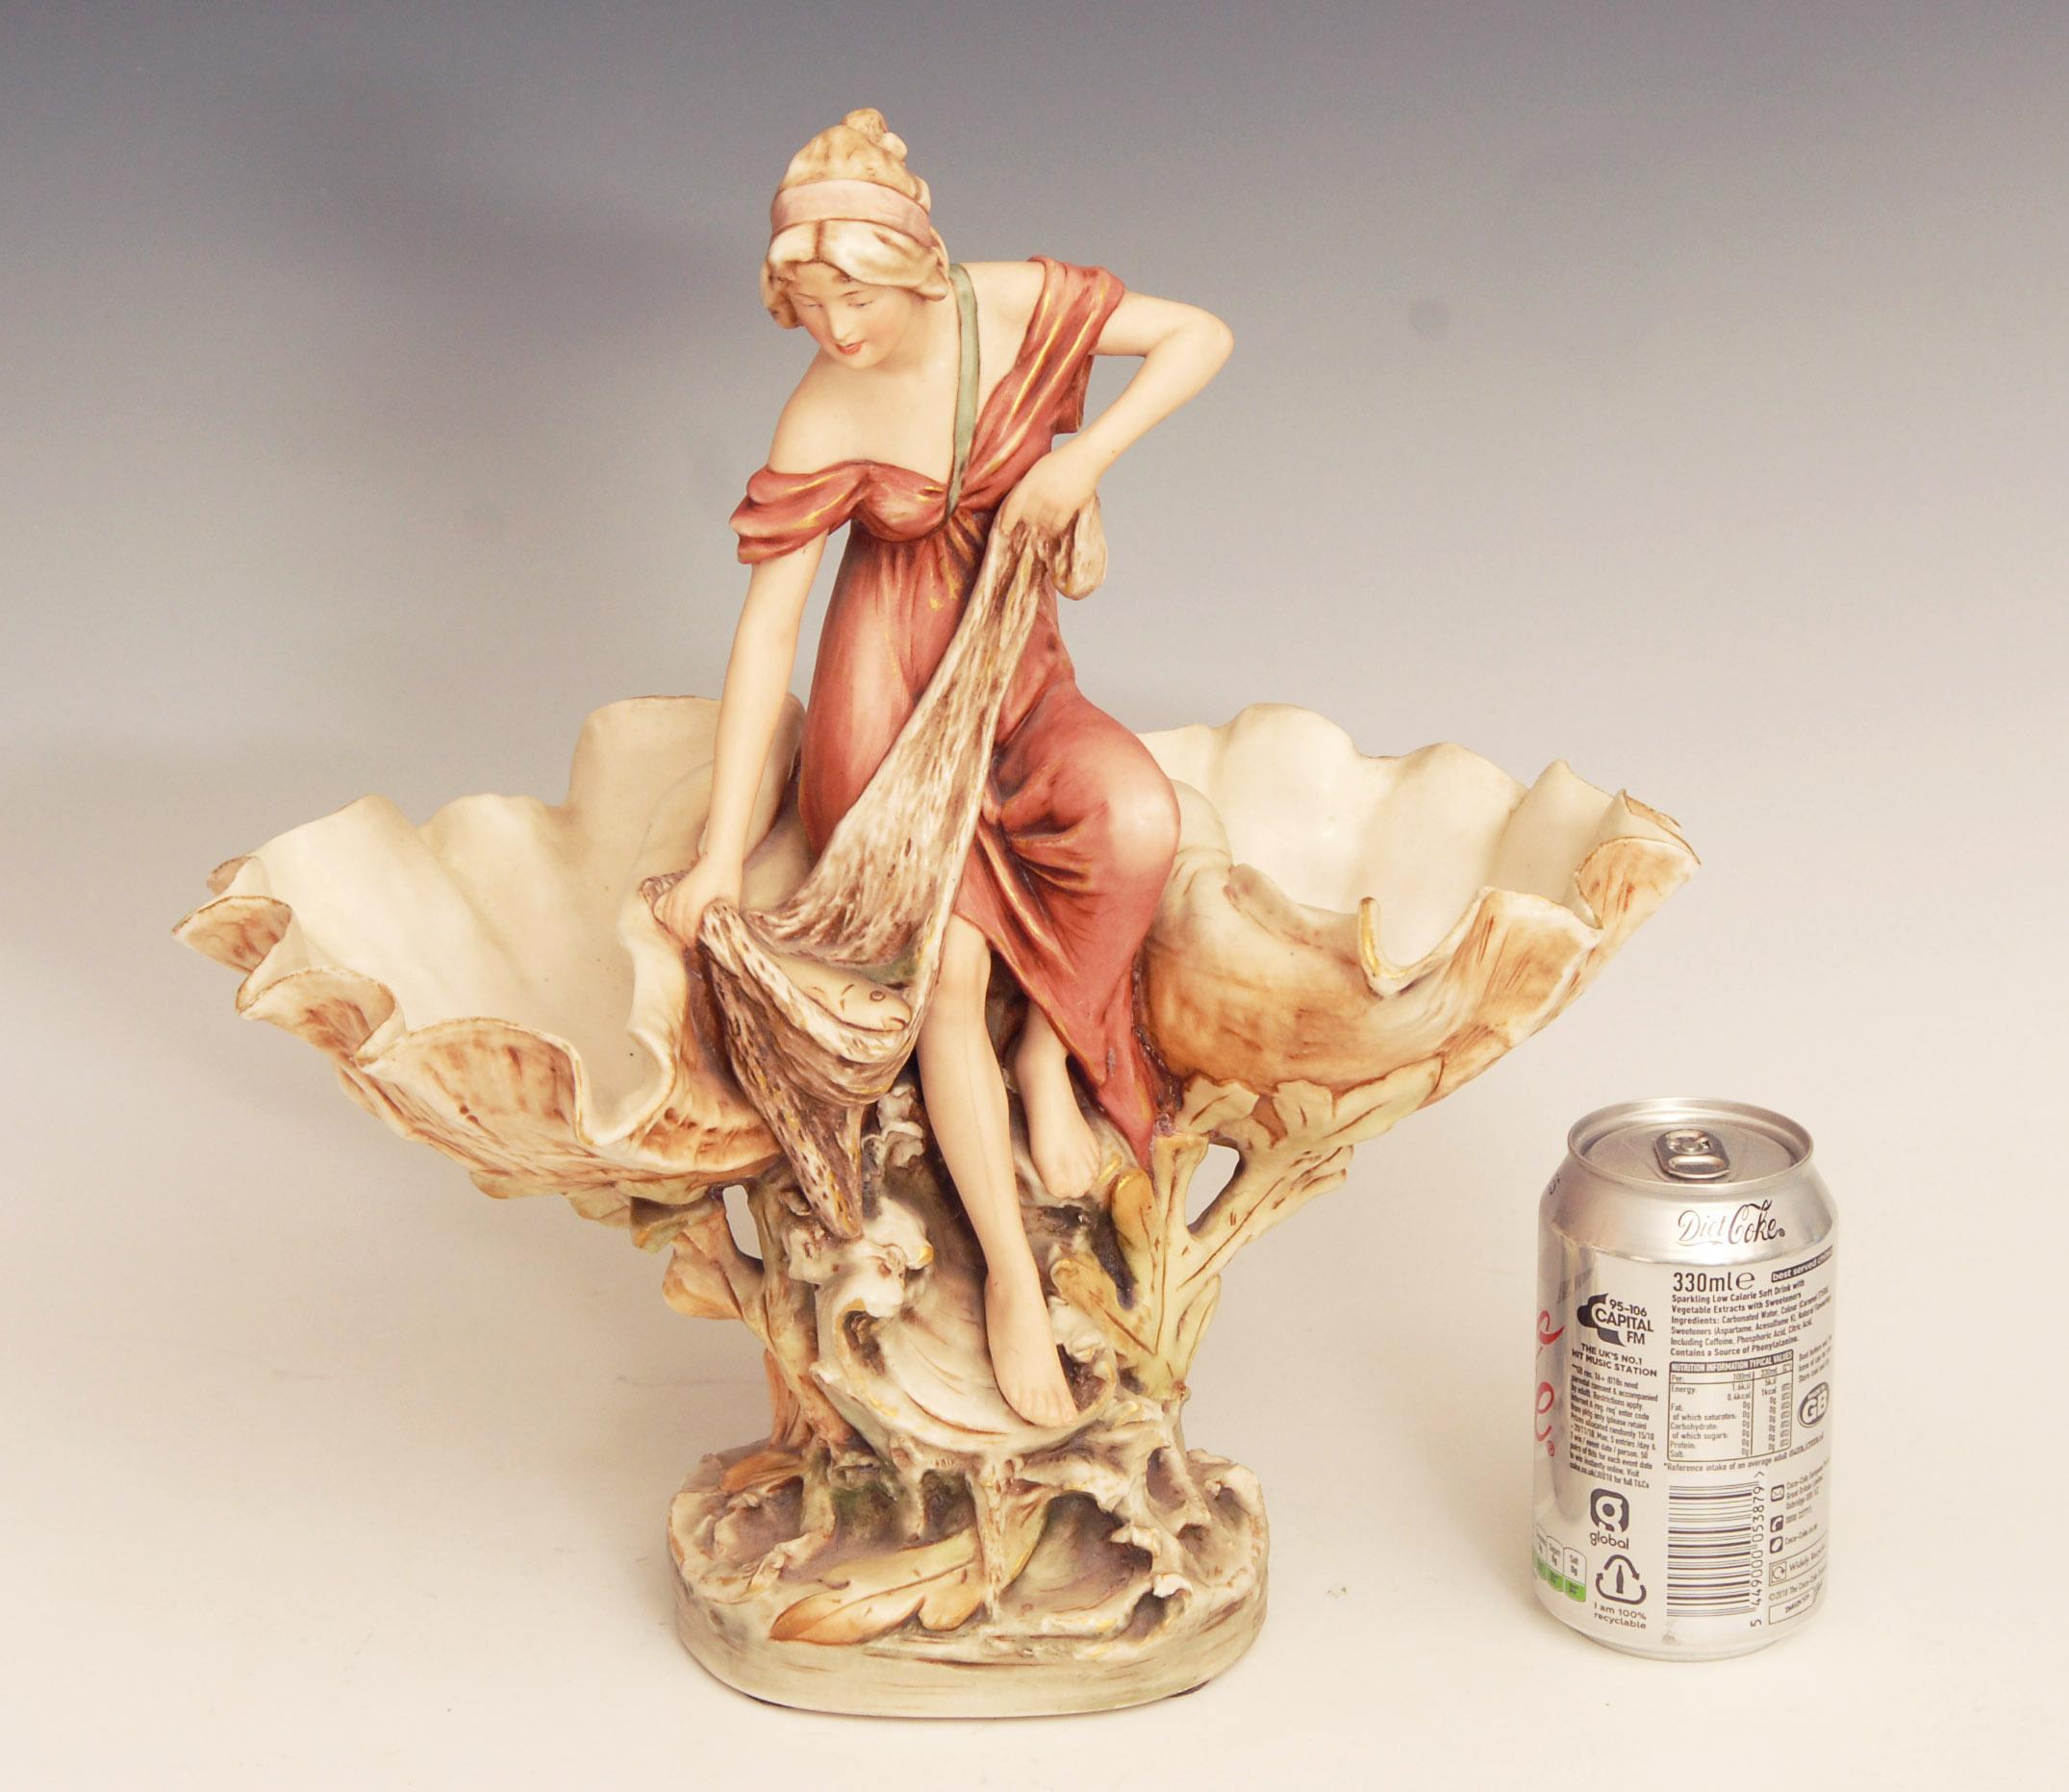 20th Century Art Nouveau Royal Dux Porcelain Double Comport / Centrepiece For Sale